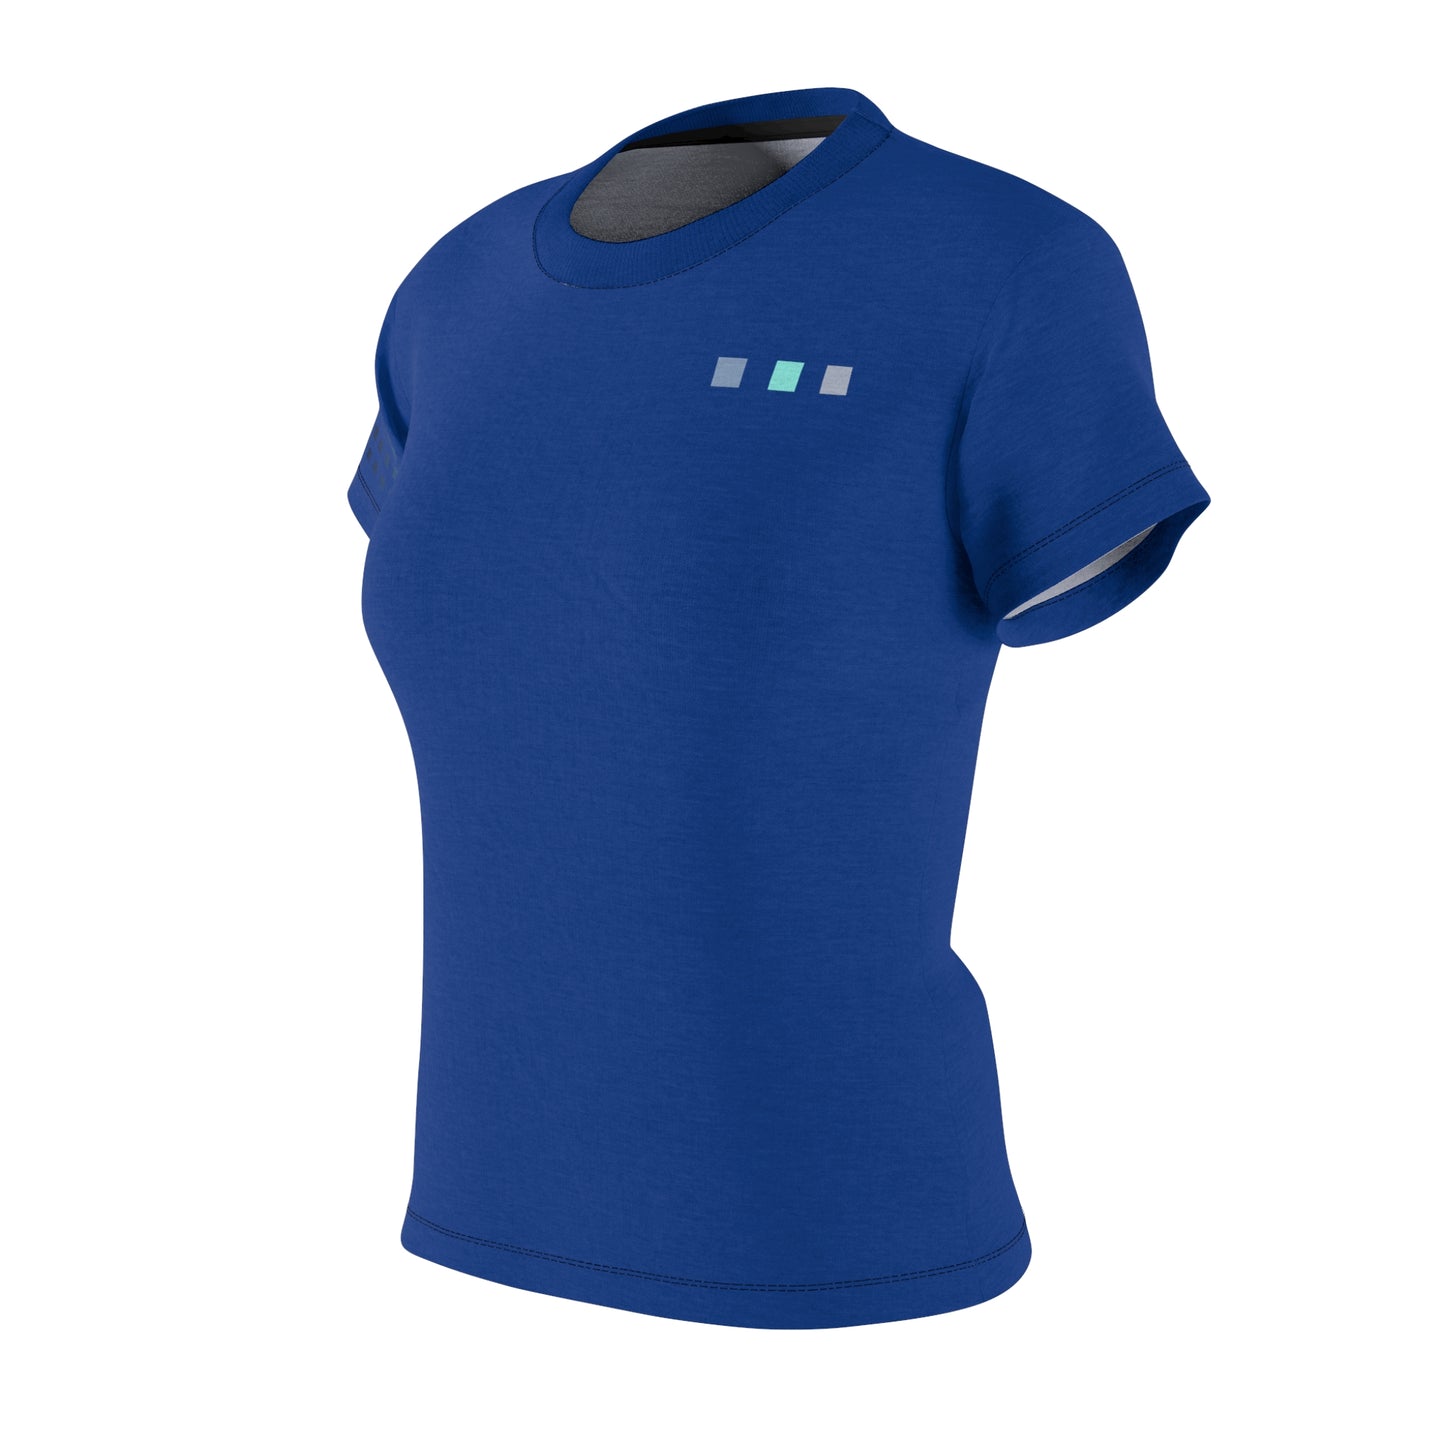 Paladin Punks #58 Blue T-shirt Short Sleeve Sublimation Dye